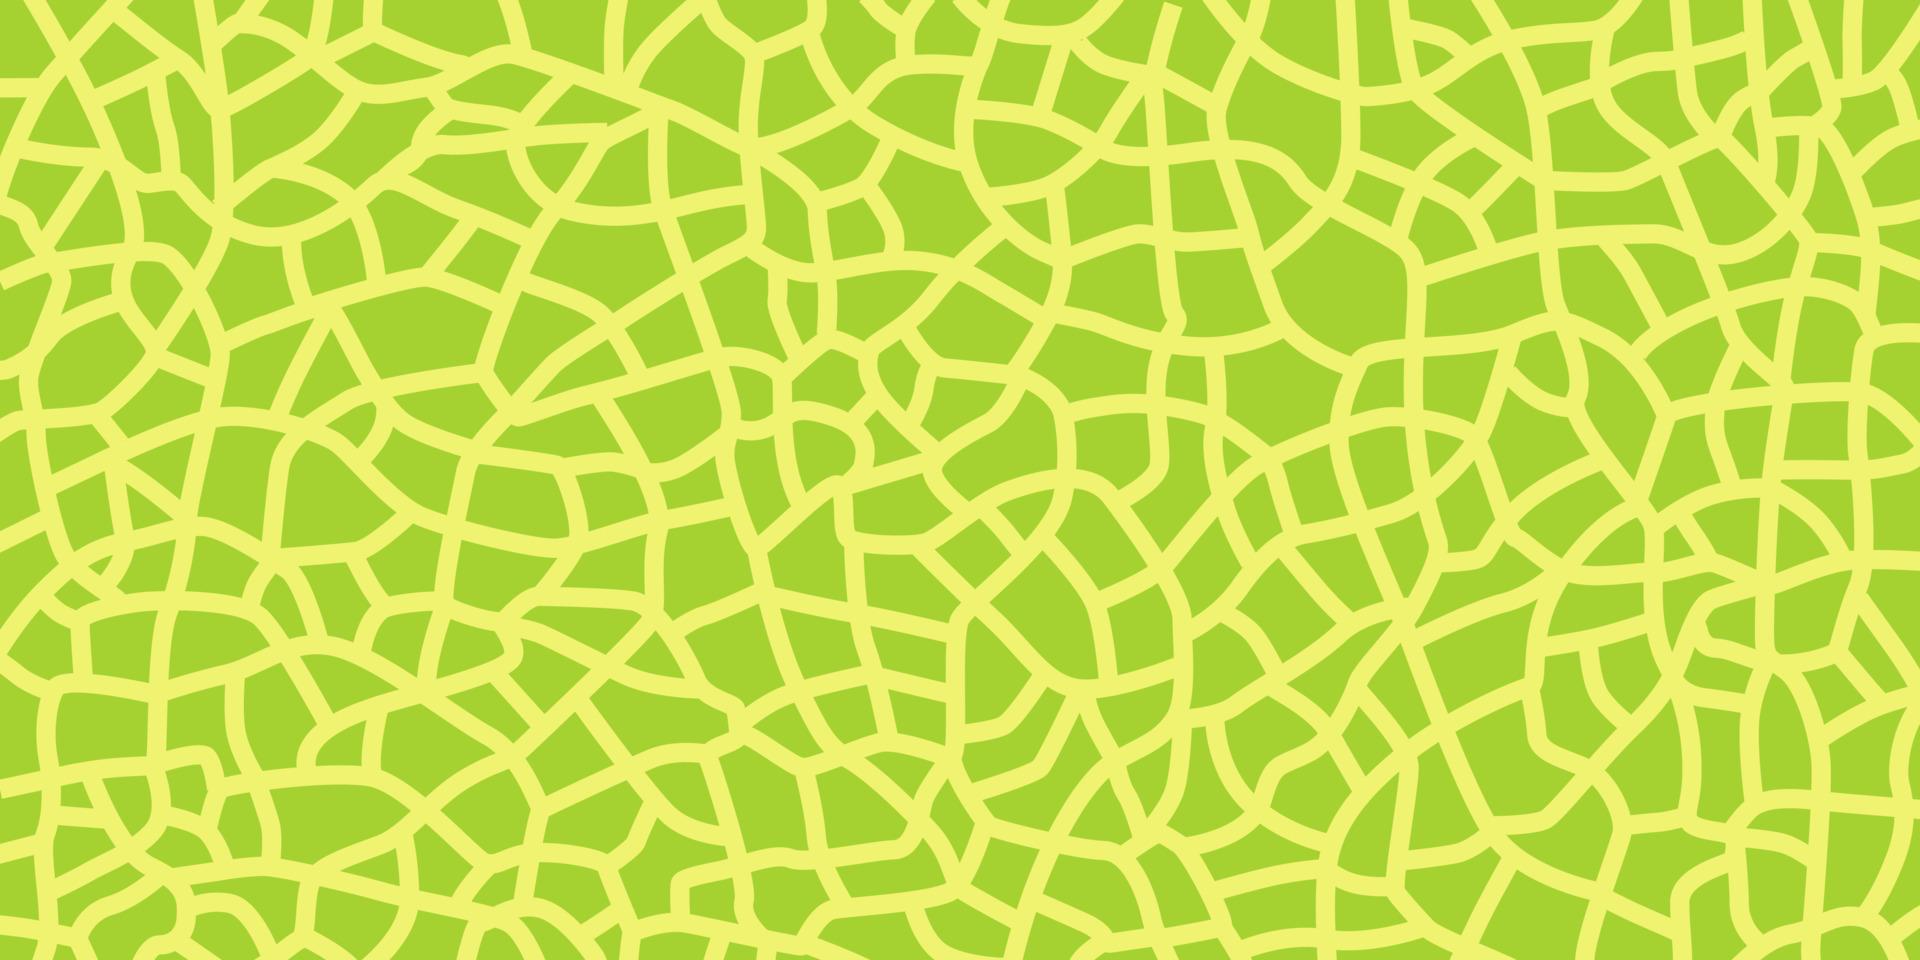 Green melon texture for pattern, vector art